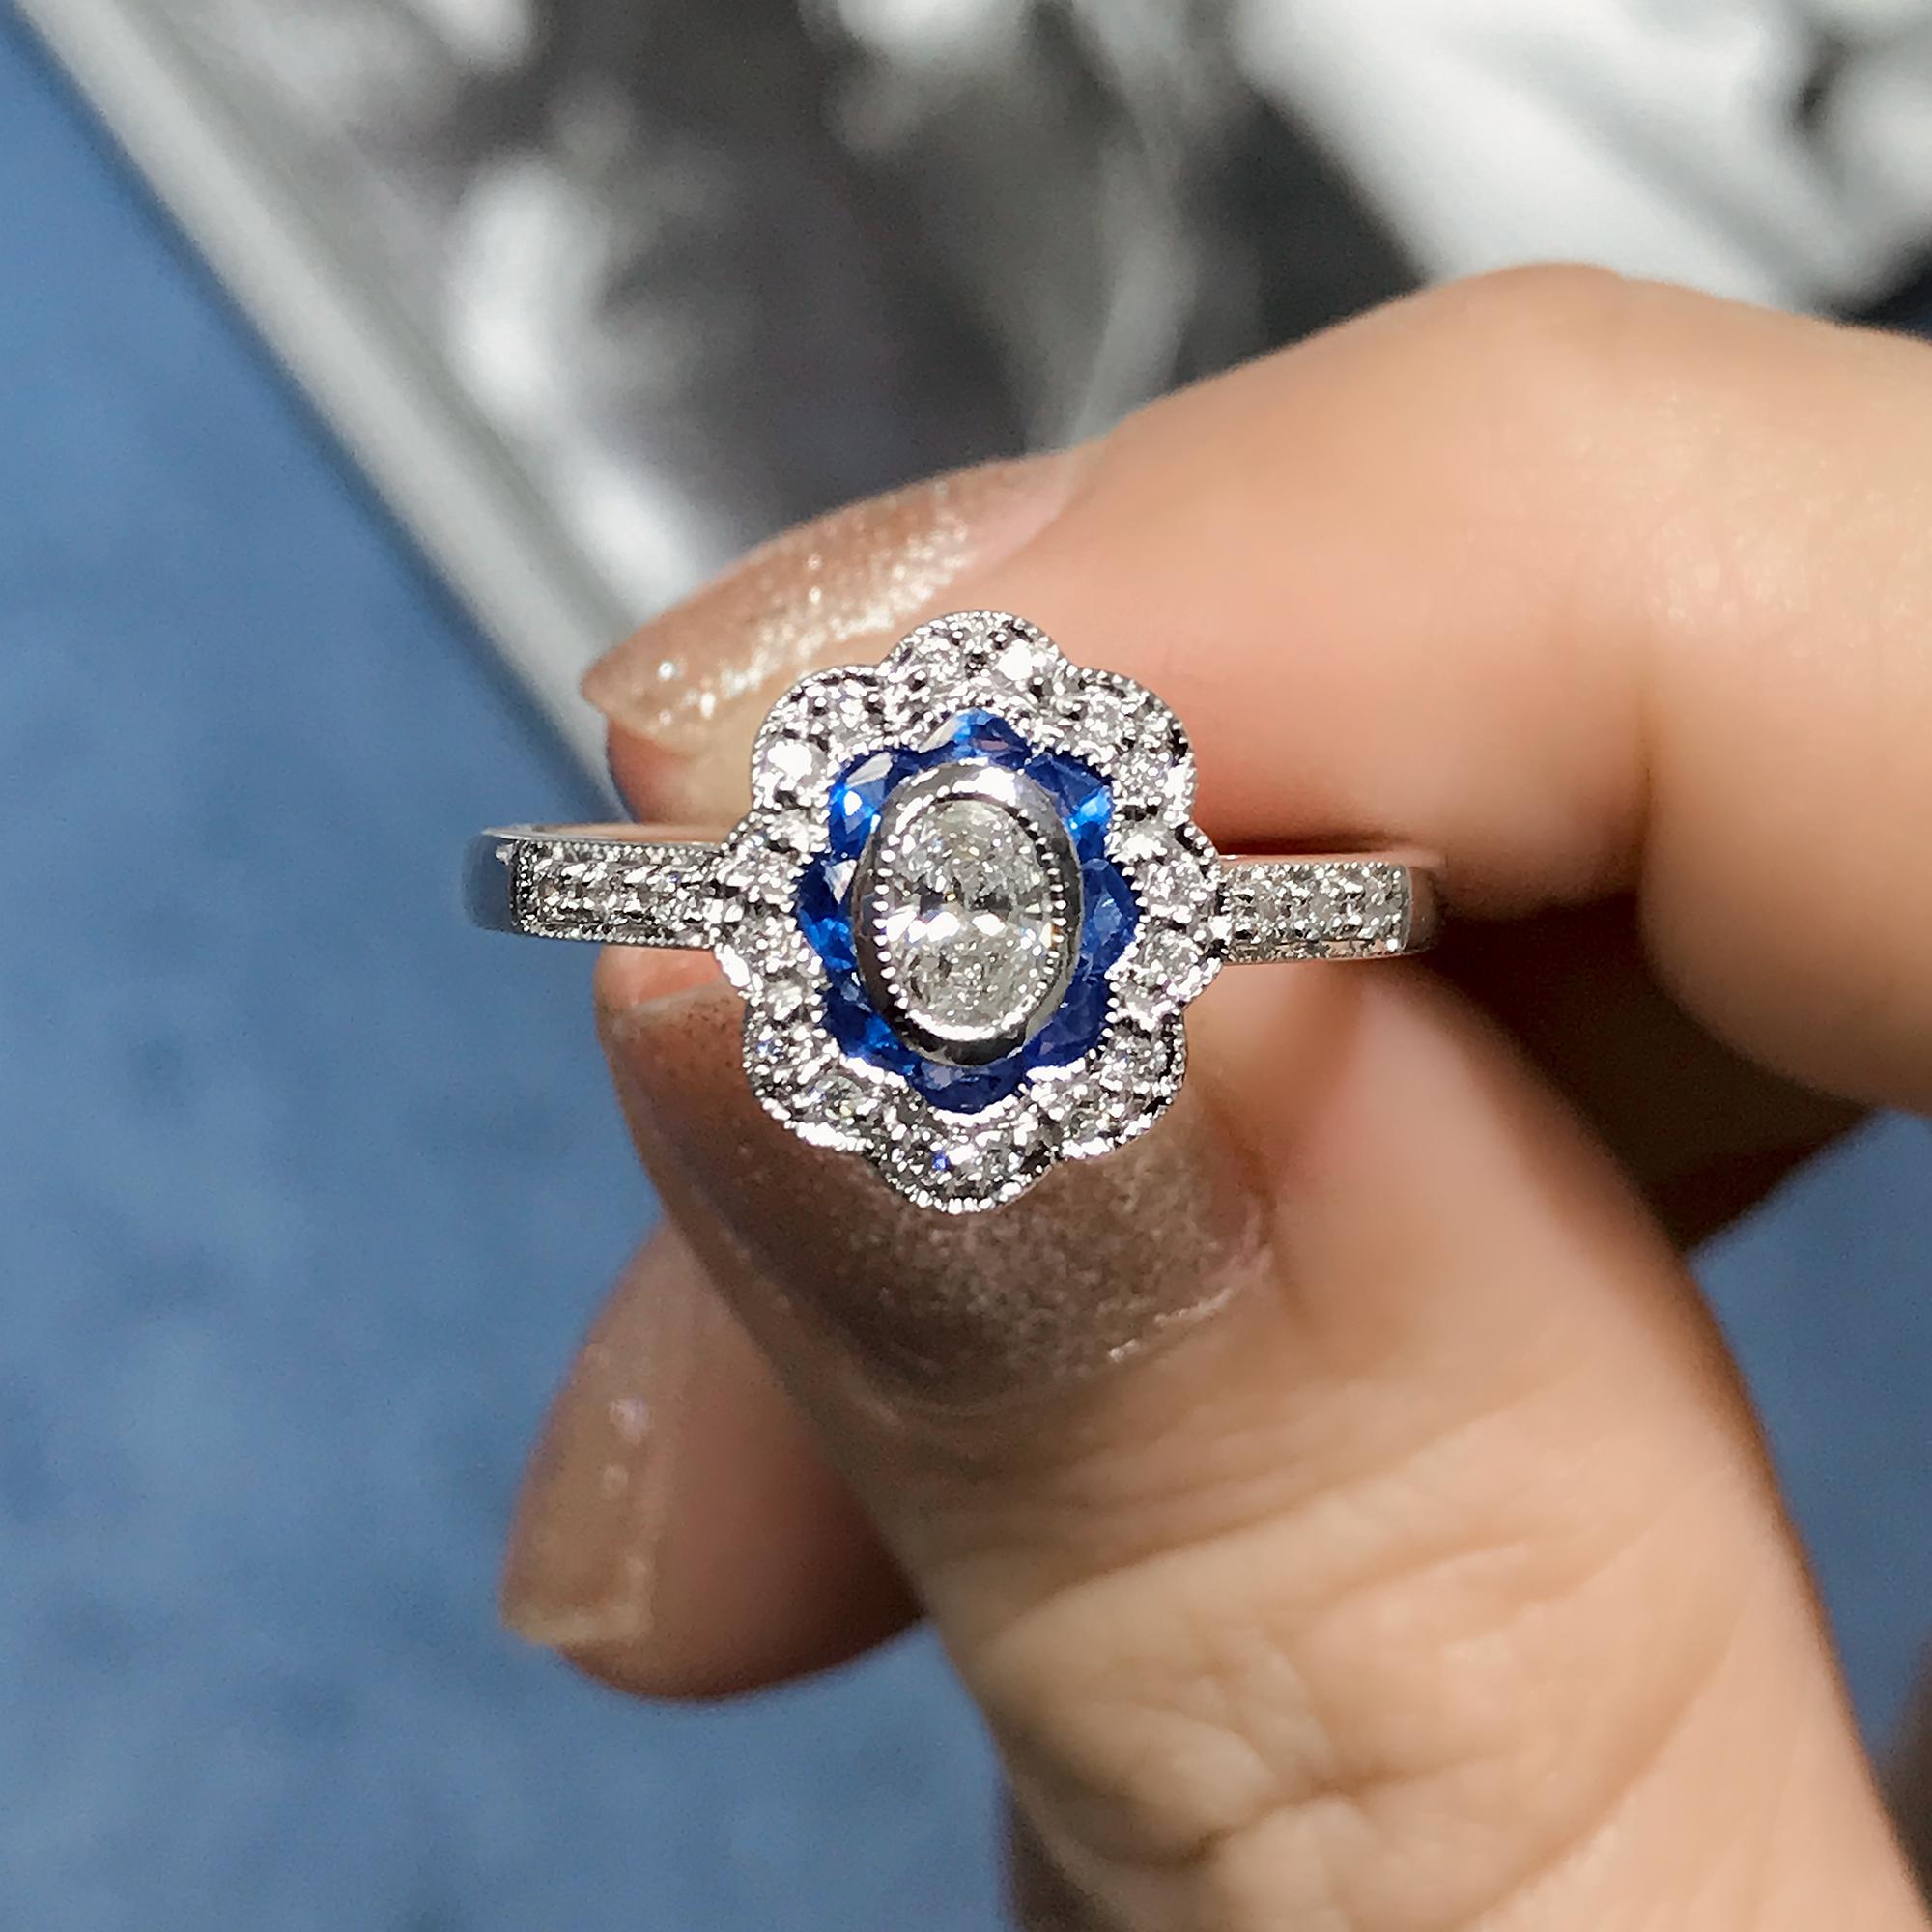 Dieser schöne Ring ist ein Vintage inspirierten Stil, der beliebte Halo-Ring verfügt über ovale G Farbe VS Klarheit Diamant für seine Mitte, umgeben von Französisch geschnitten blauen Saphir und runden Diamanten. Dies wäre ein wunderbarer